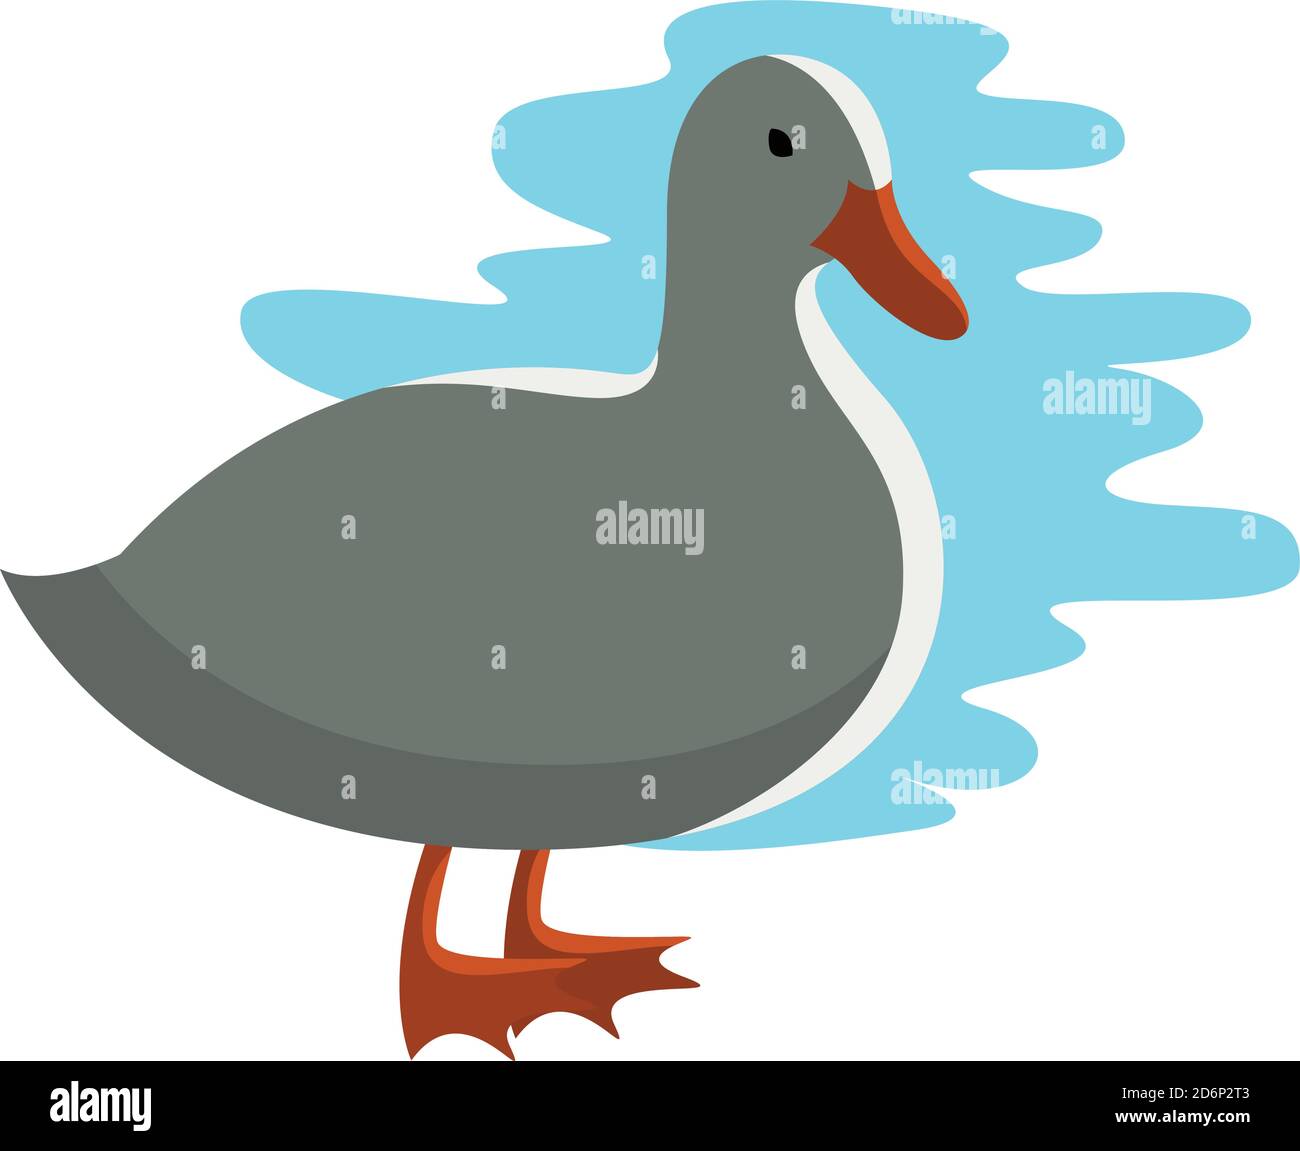 White duck, illustration, vector on white background Stock Vector